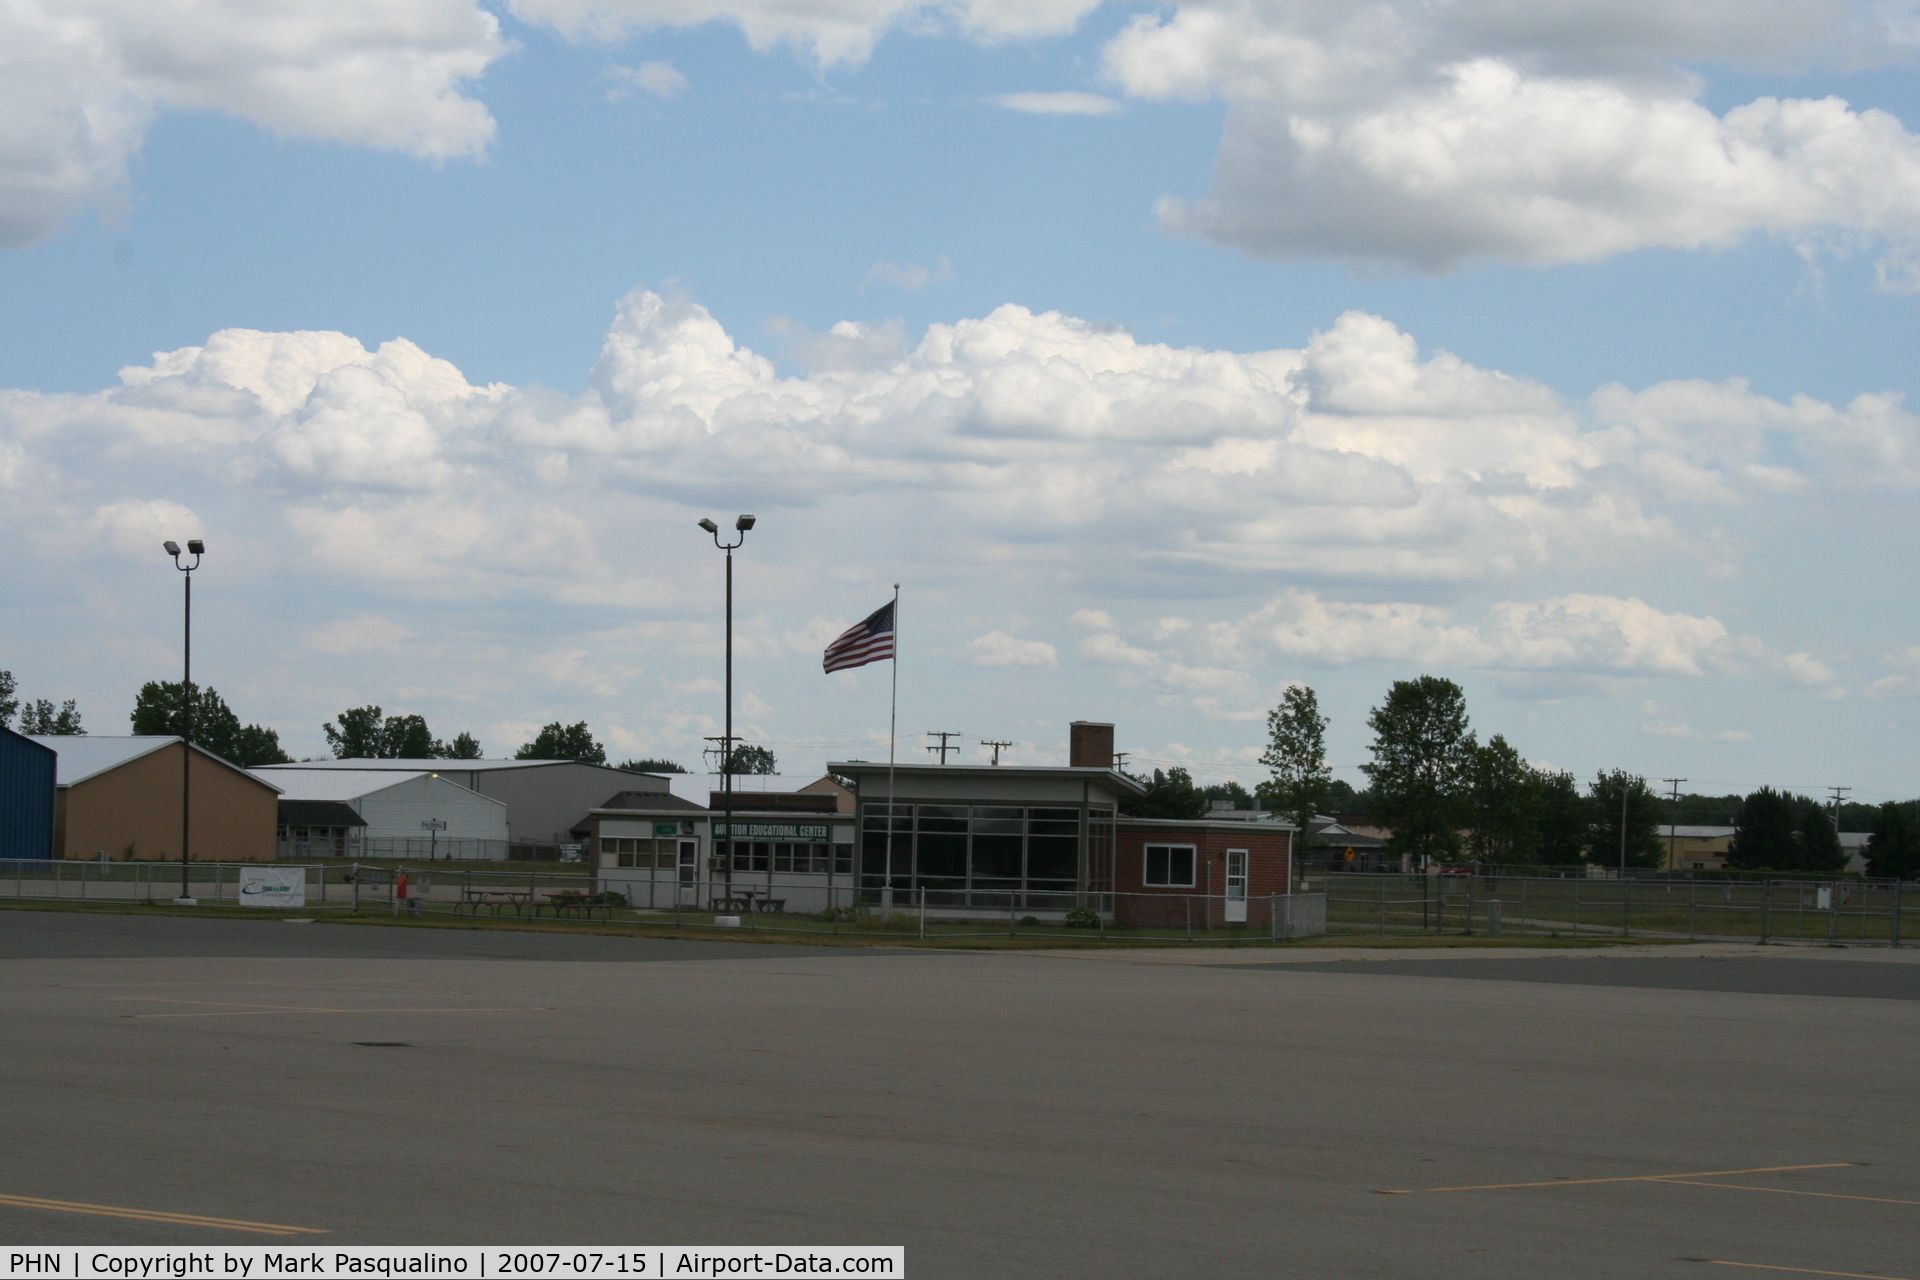 St Clair County International Airport (PHN) - Main Terminal